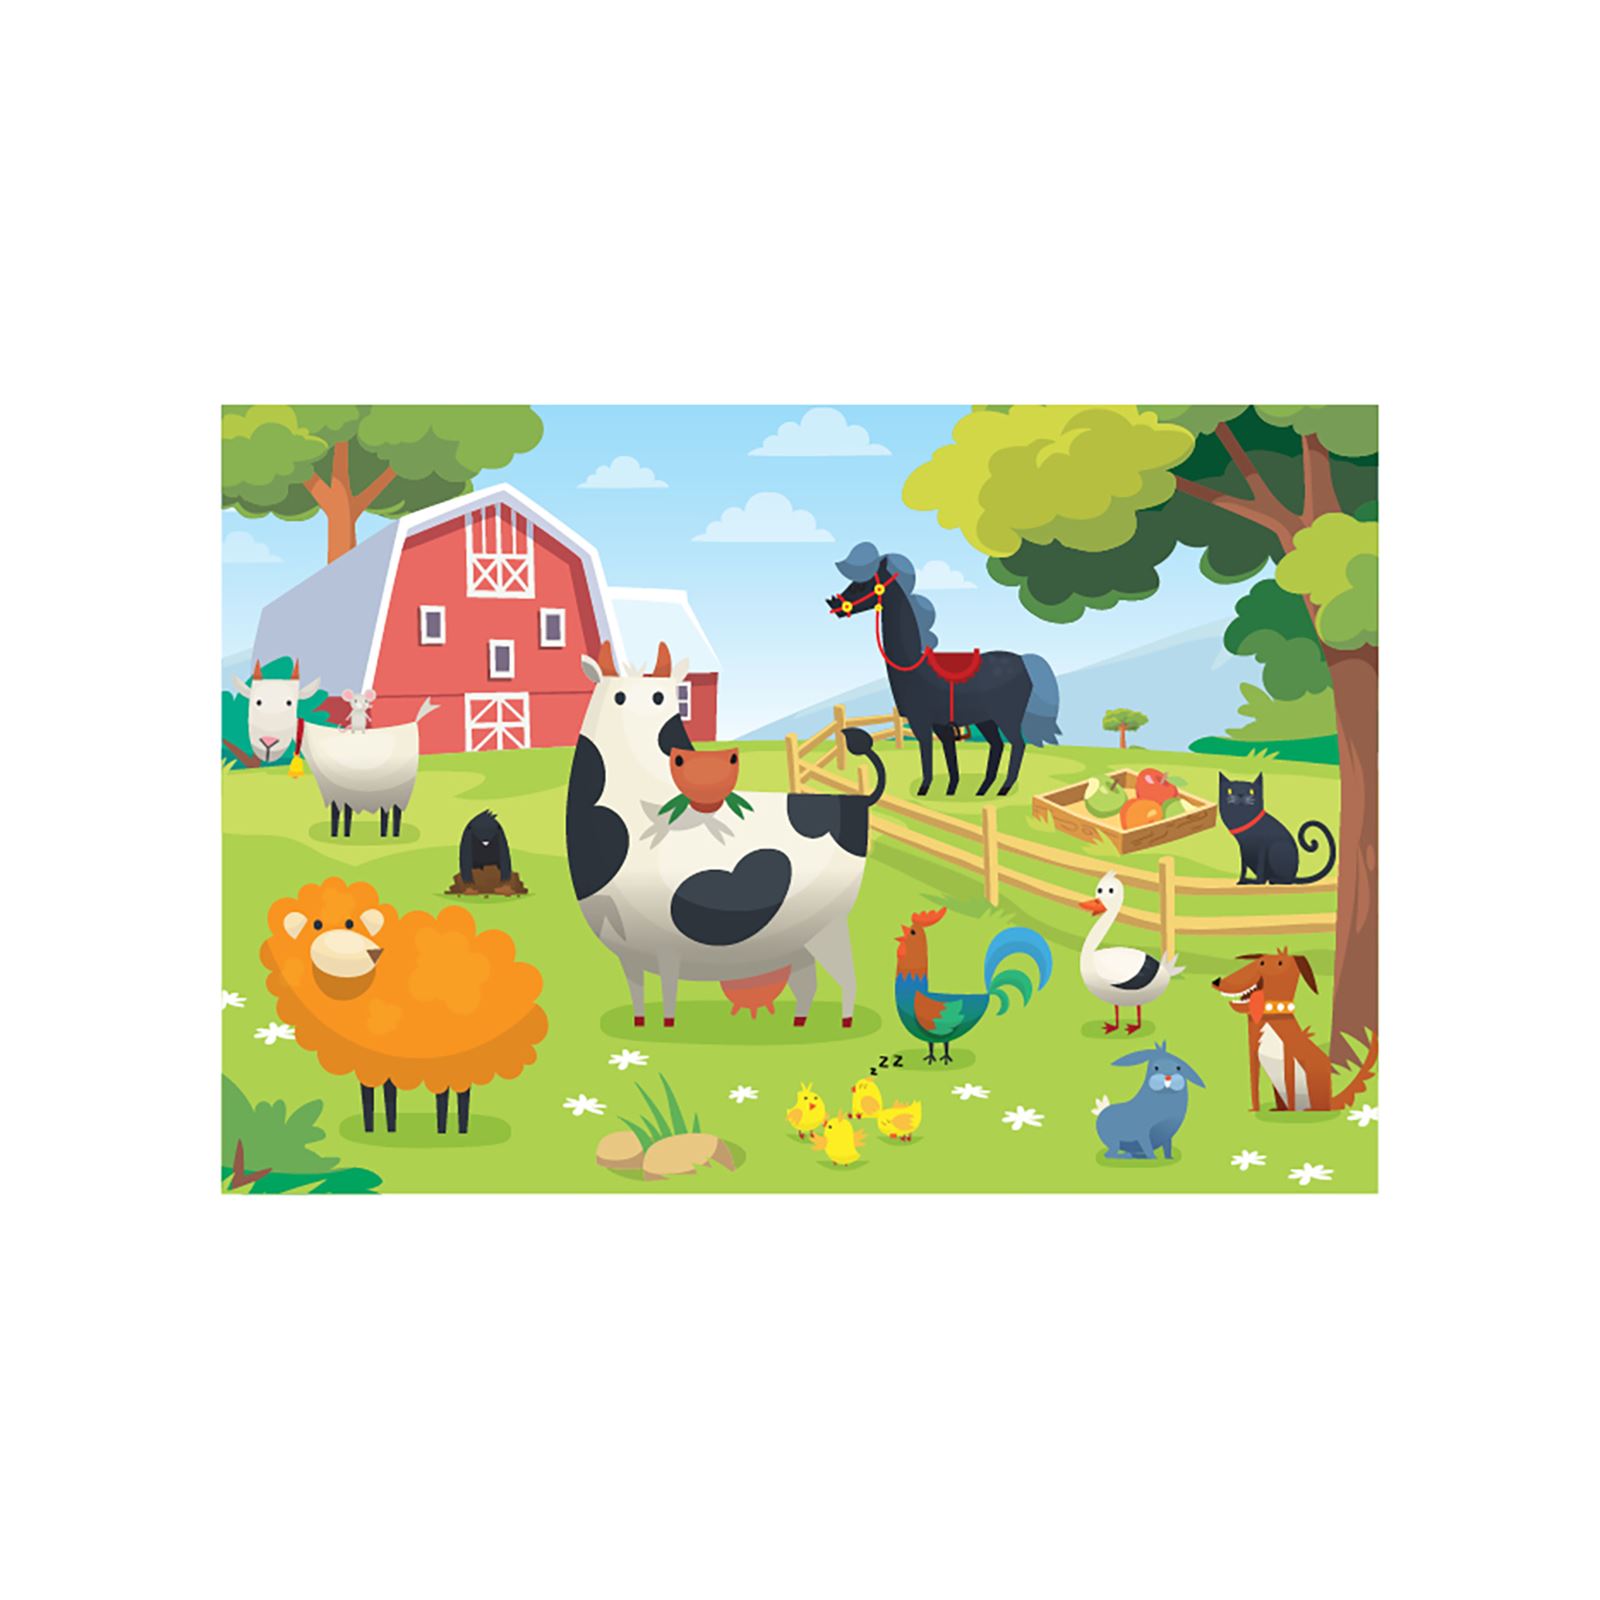 Focus Games Çiftlik Hayvanları Puzzle 24 Parça Renkli